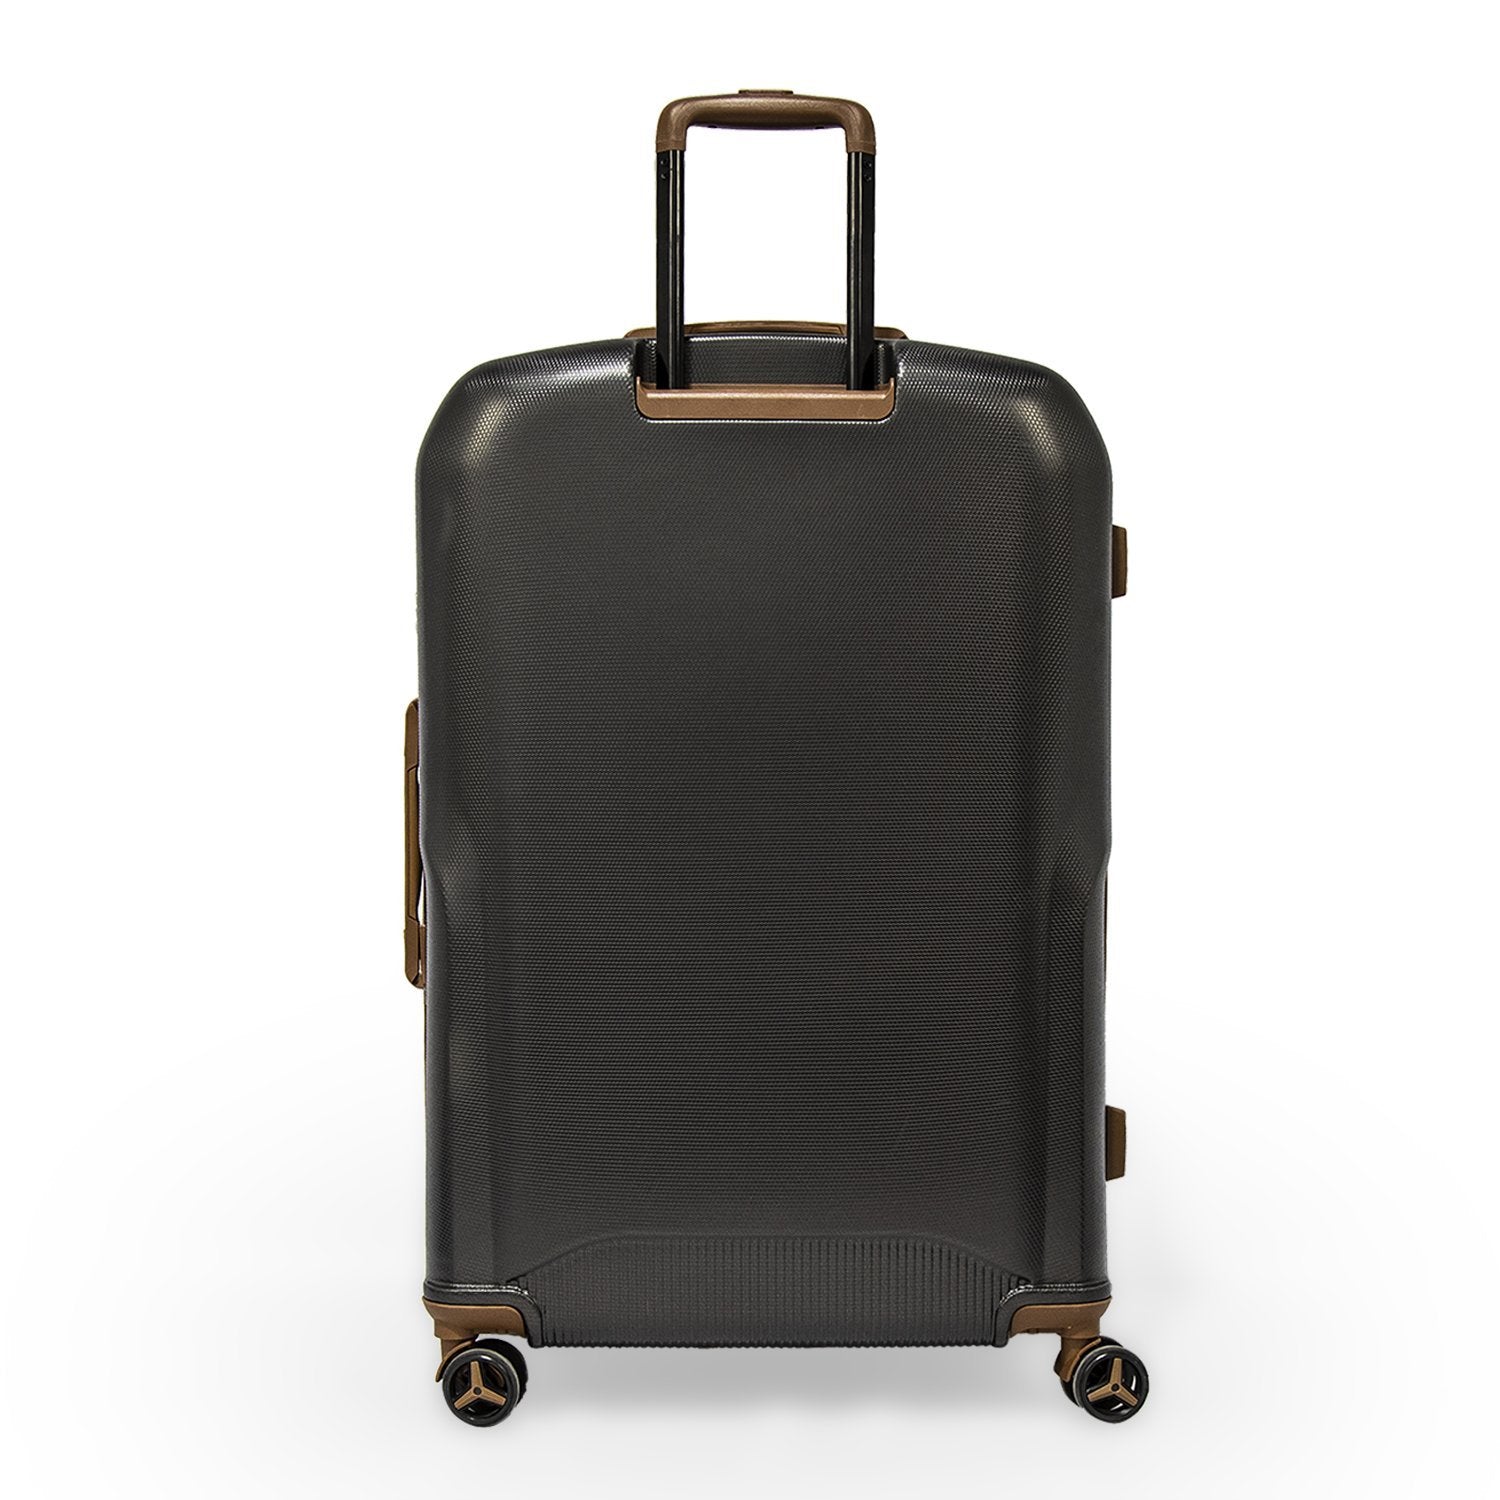 Sonada Upright Luggage Expandable Hardside Suitcase Check In Grey